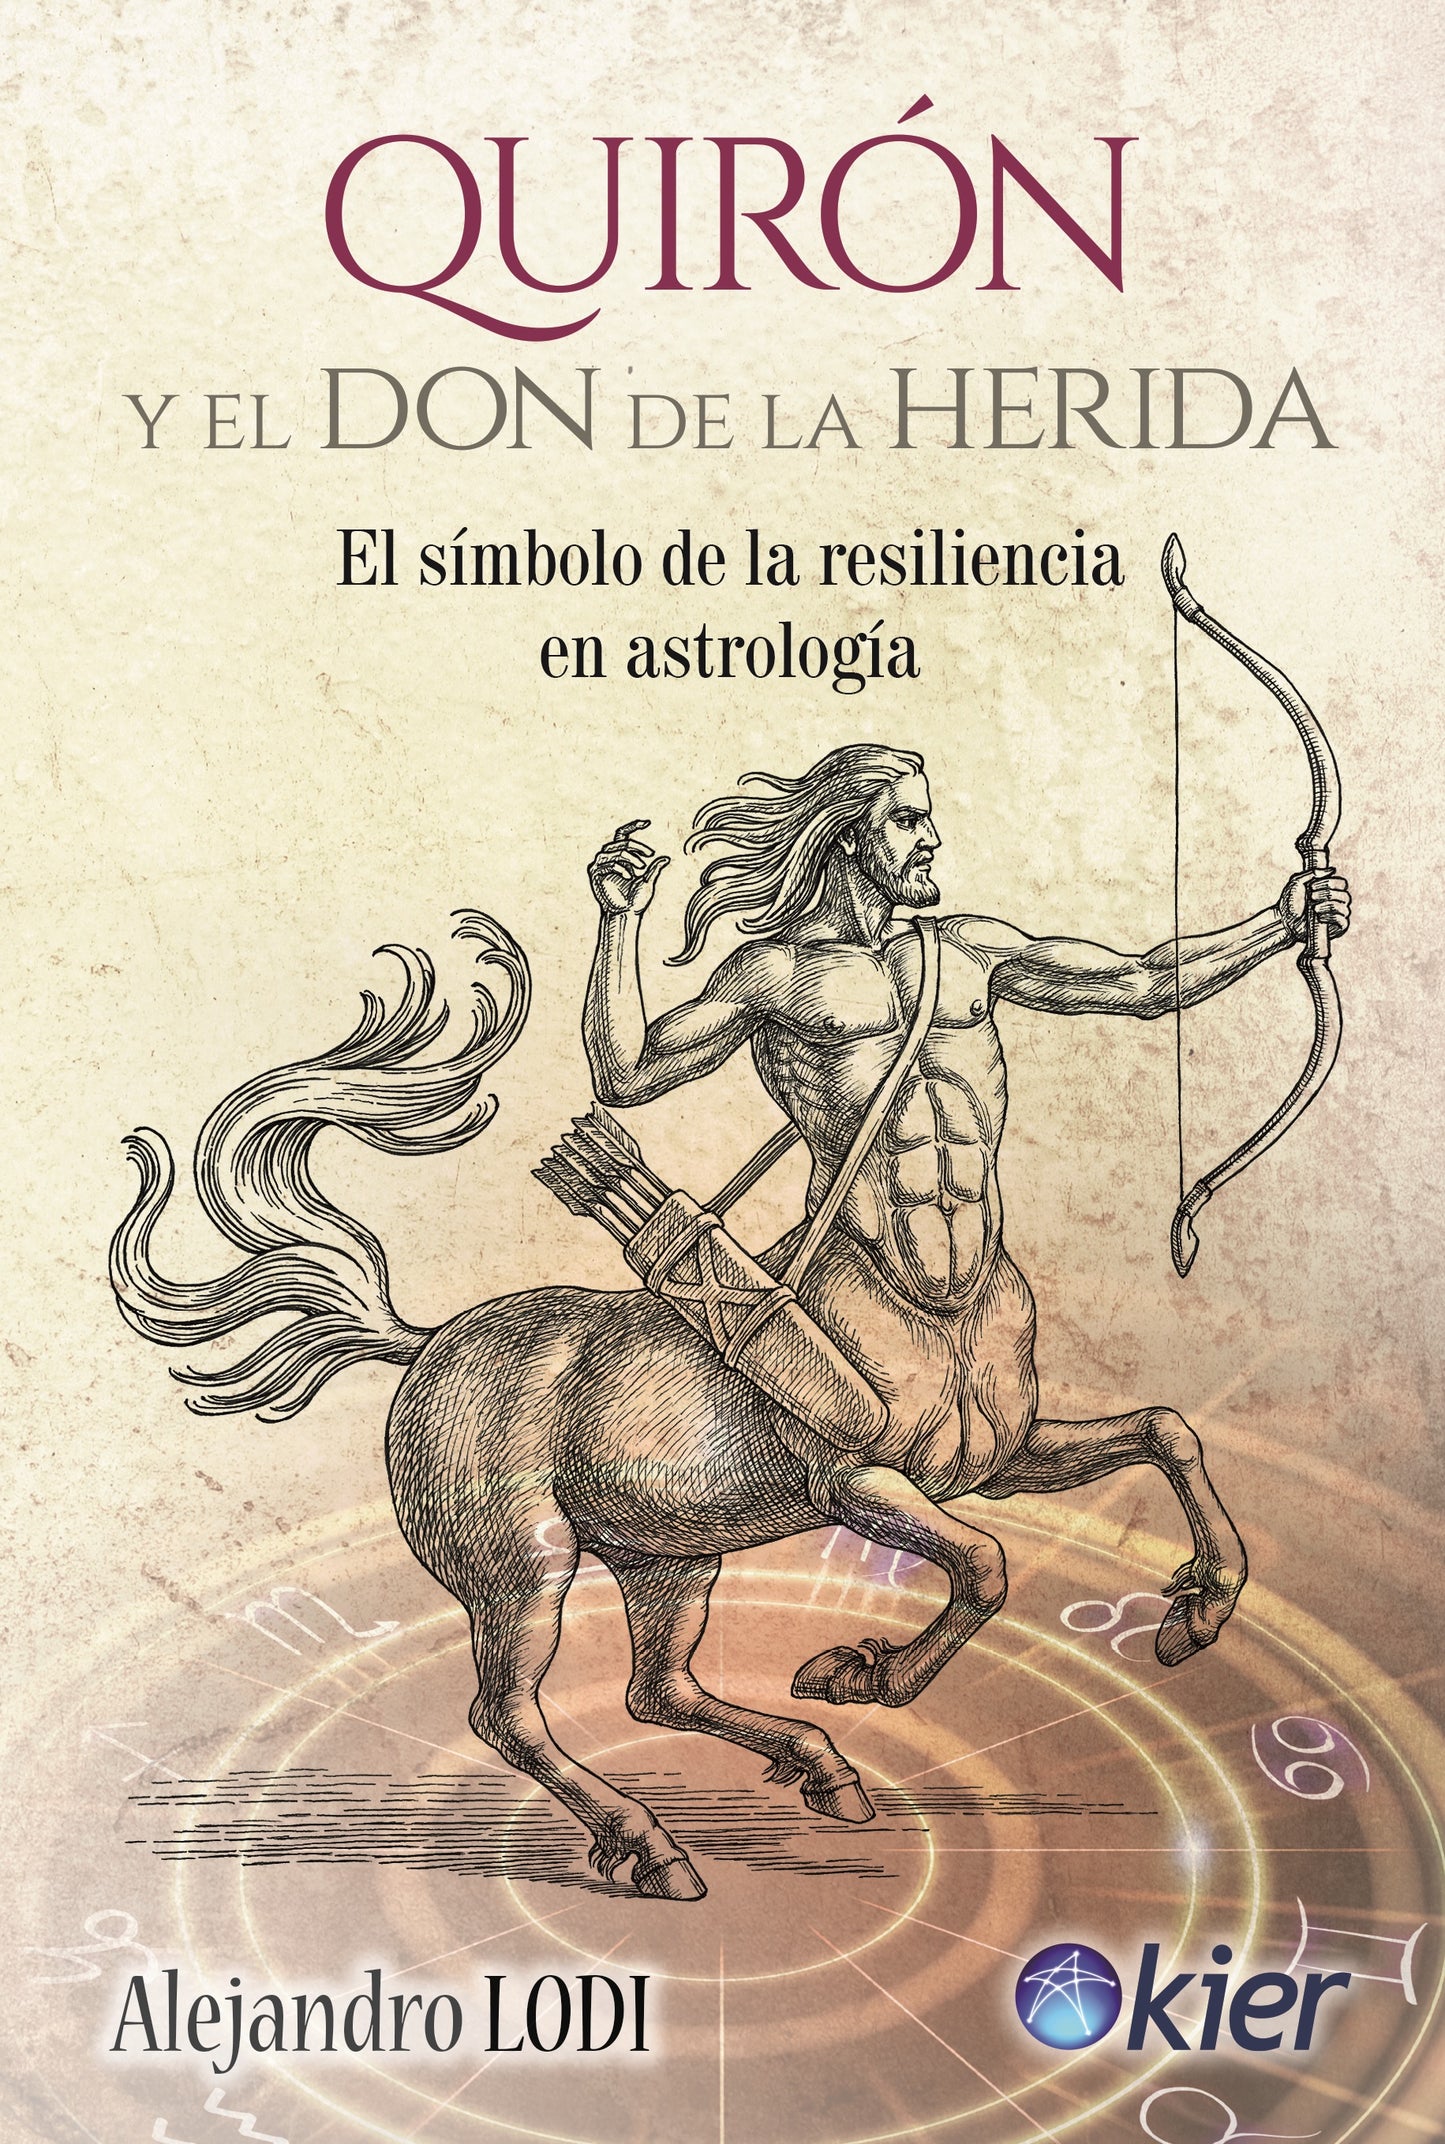 Quirón y el Don de la herida - Alejandro Lodi